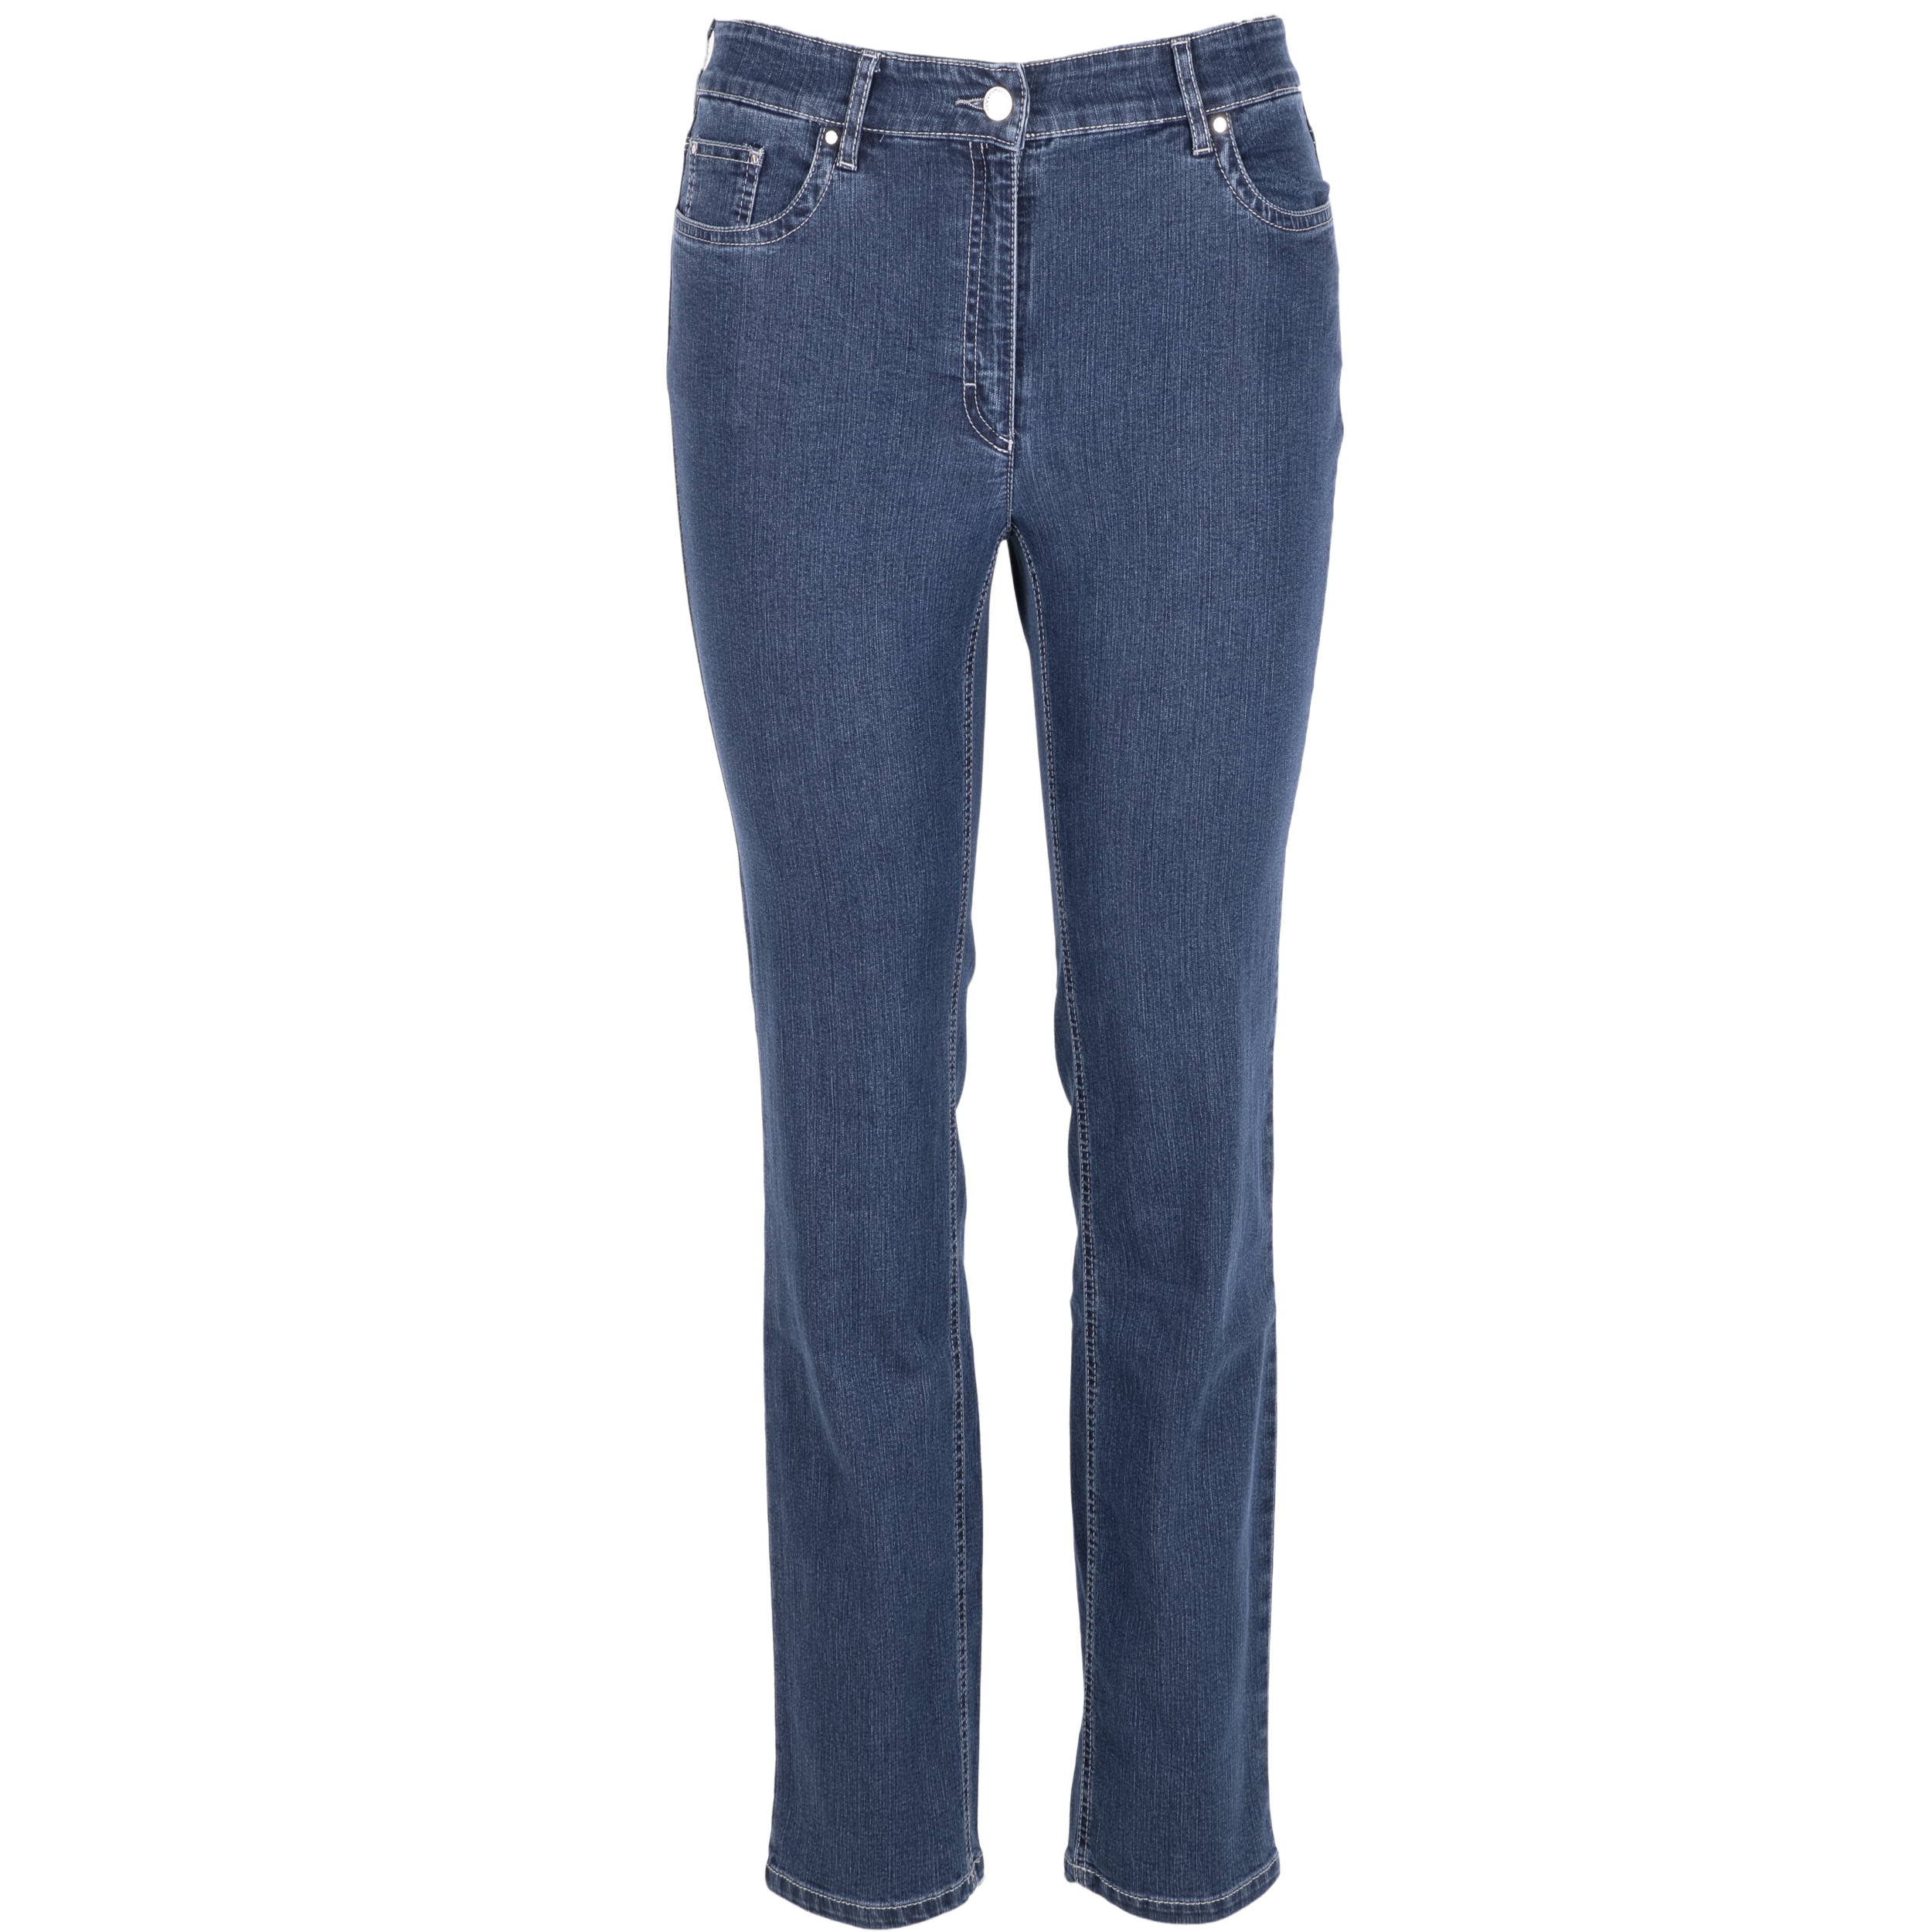 Zerres Damen Jeans Cora comfort S 21 blau